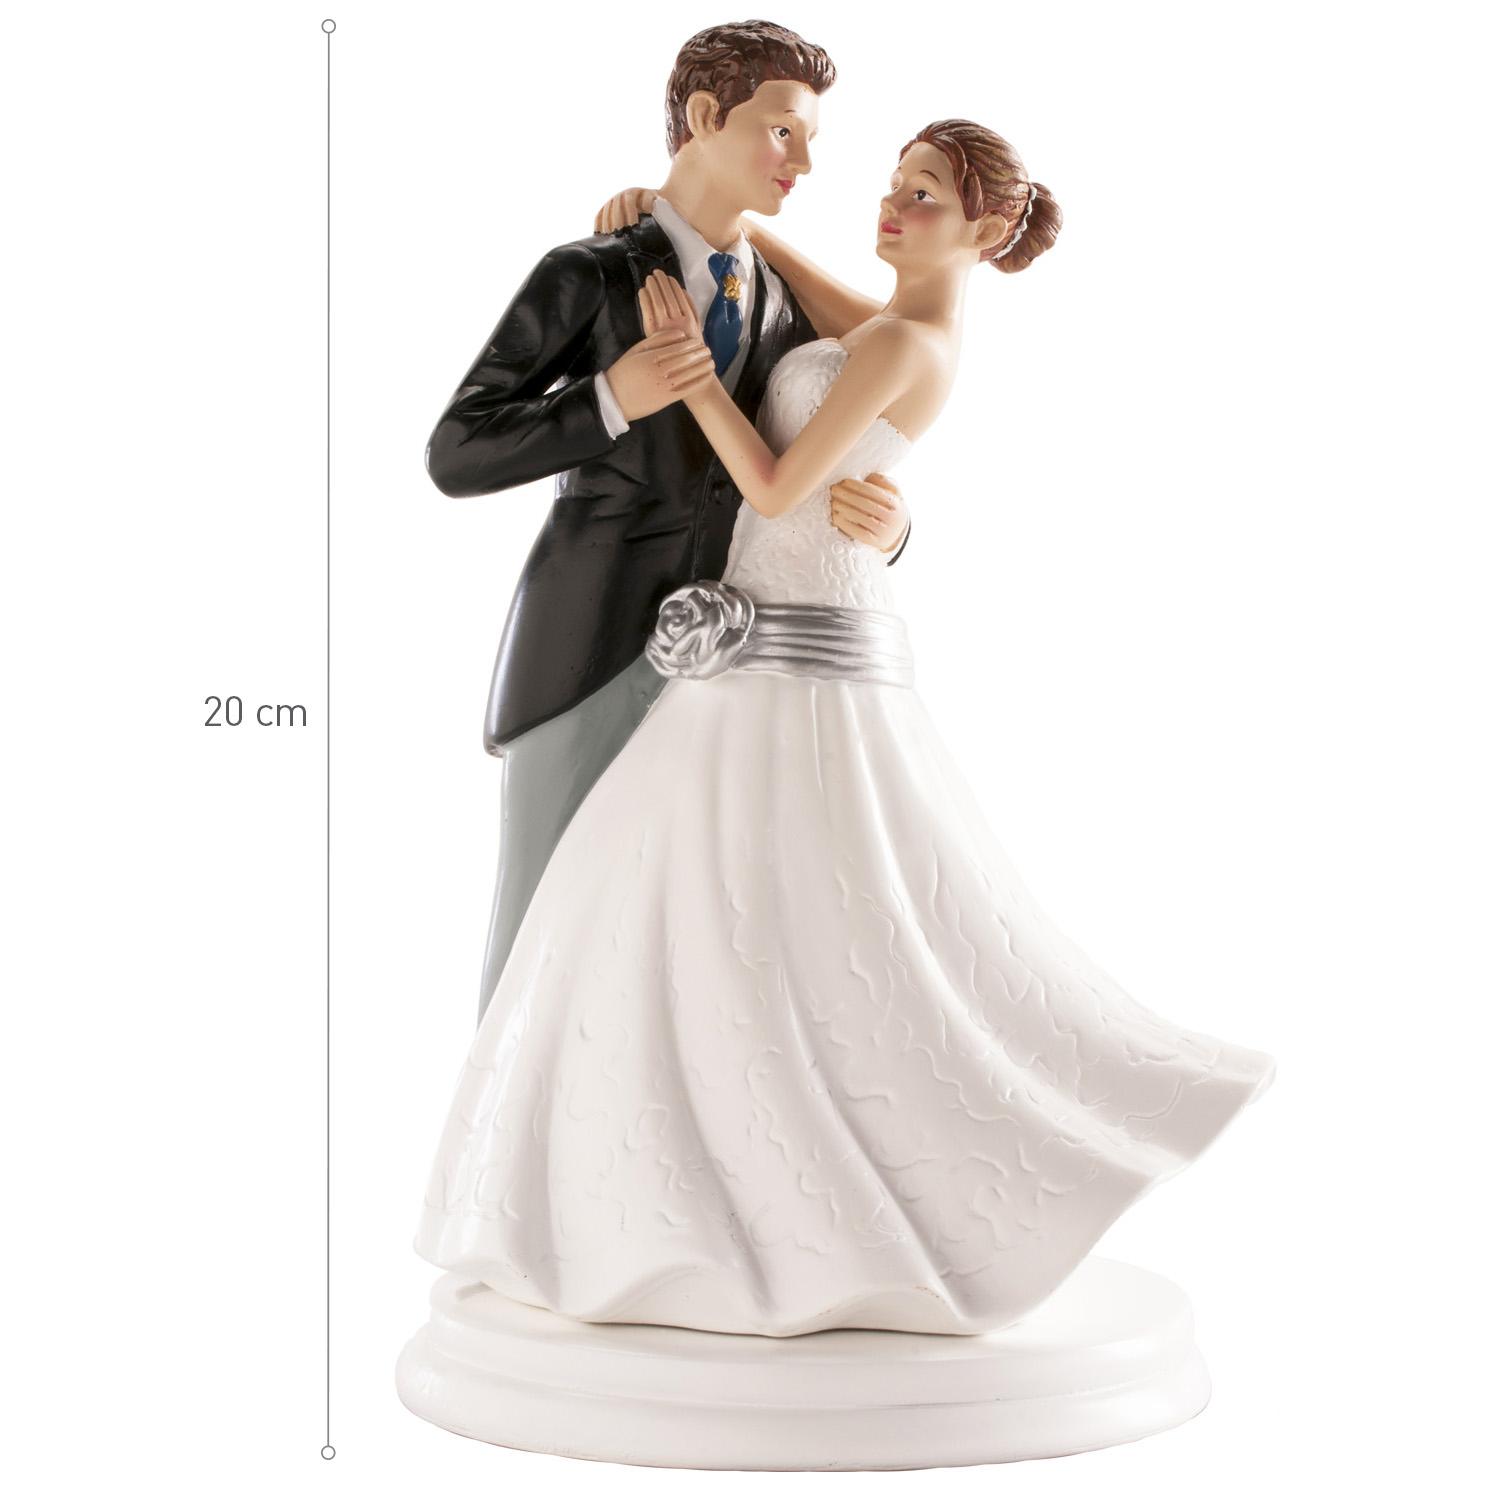 Coppia di sposi che ballano 20cm